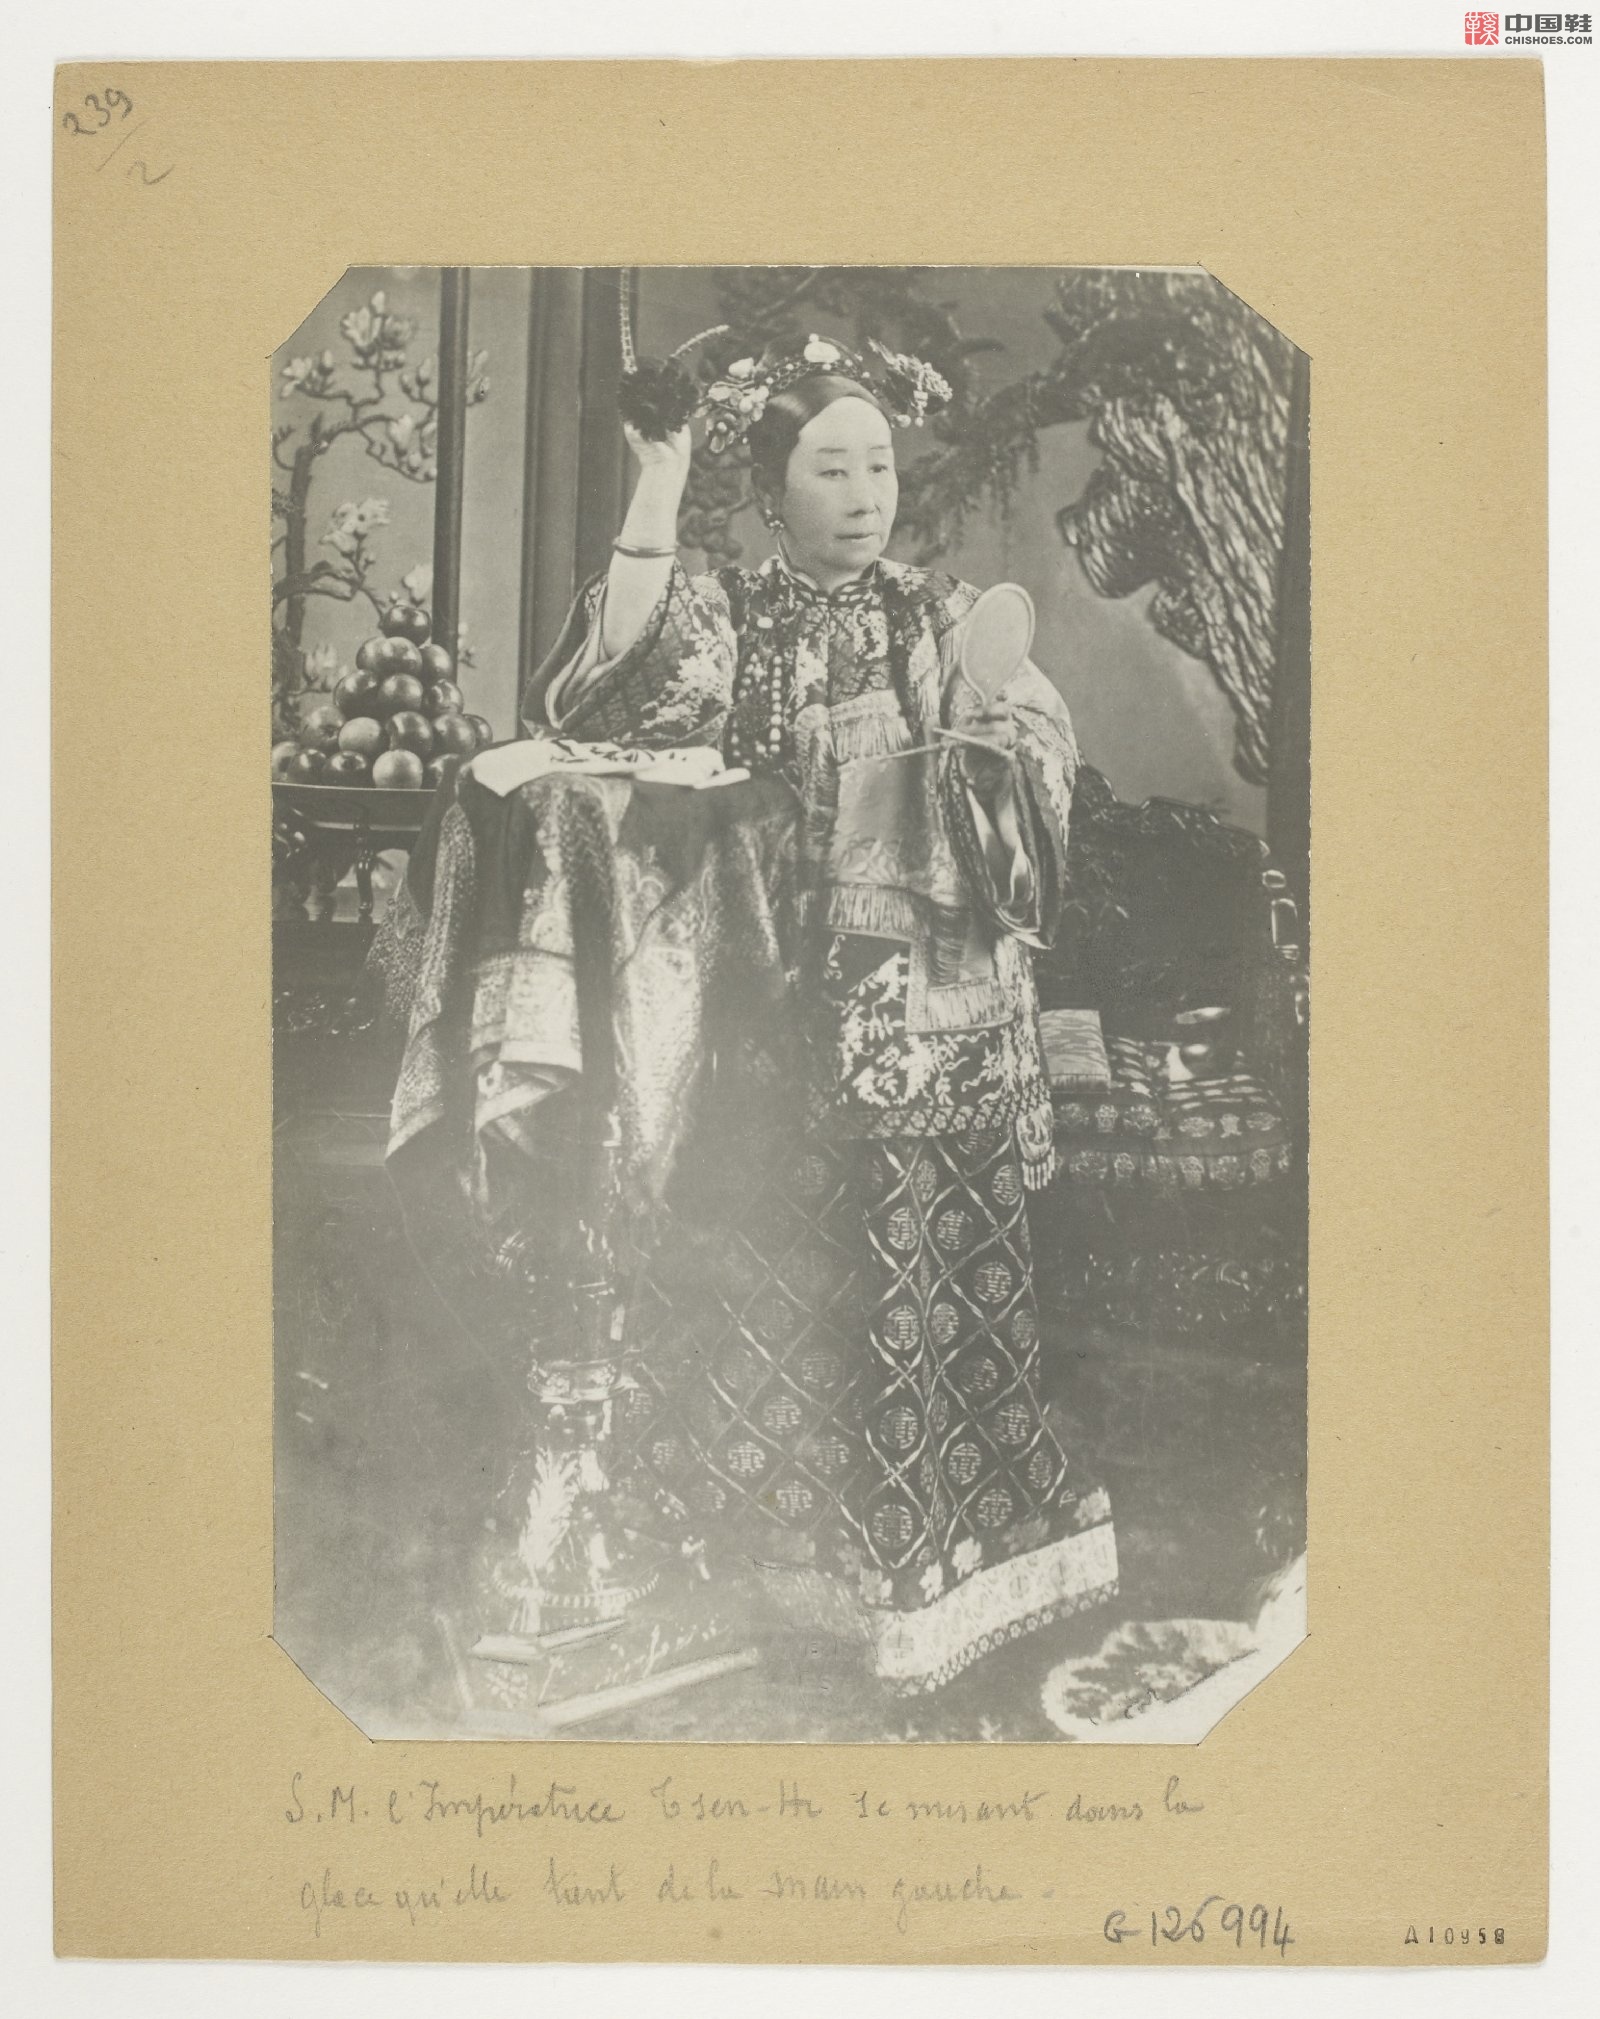 拉里贝的中国影像记录.415幅.By Firmin Laribe.1900-1910年_Page_026.jpg